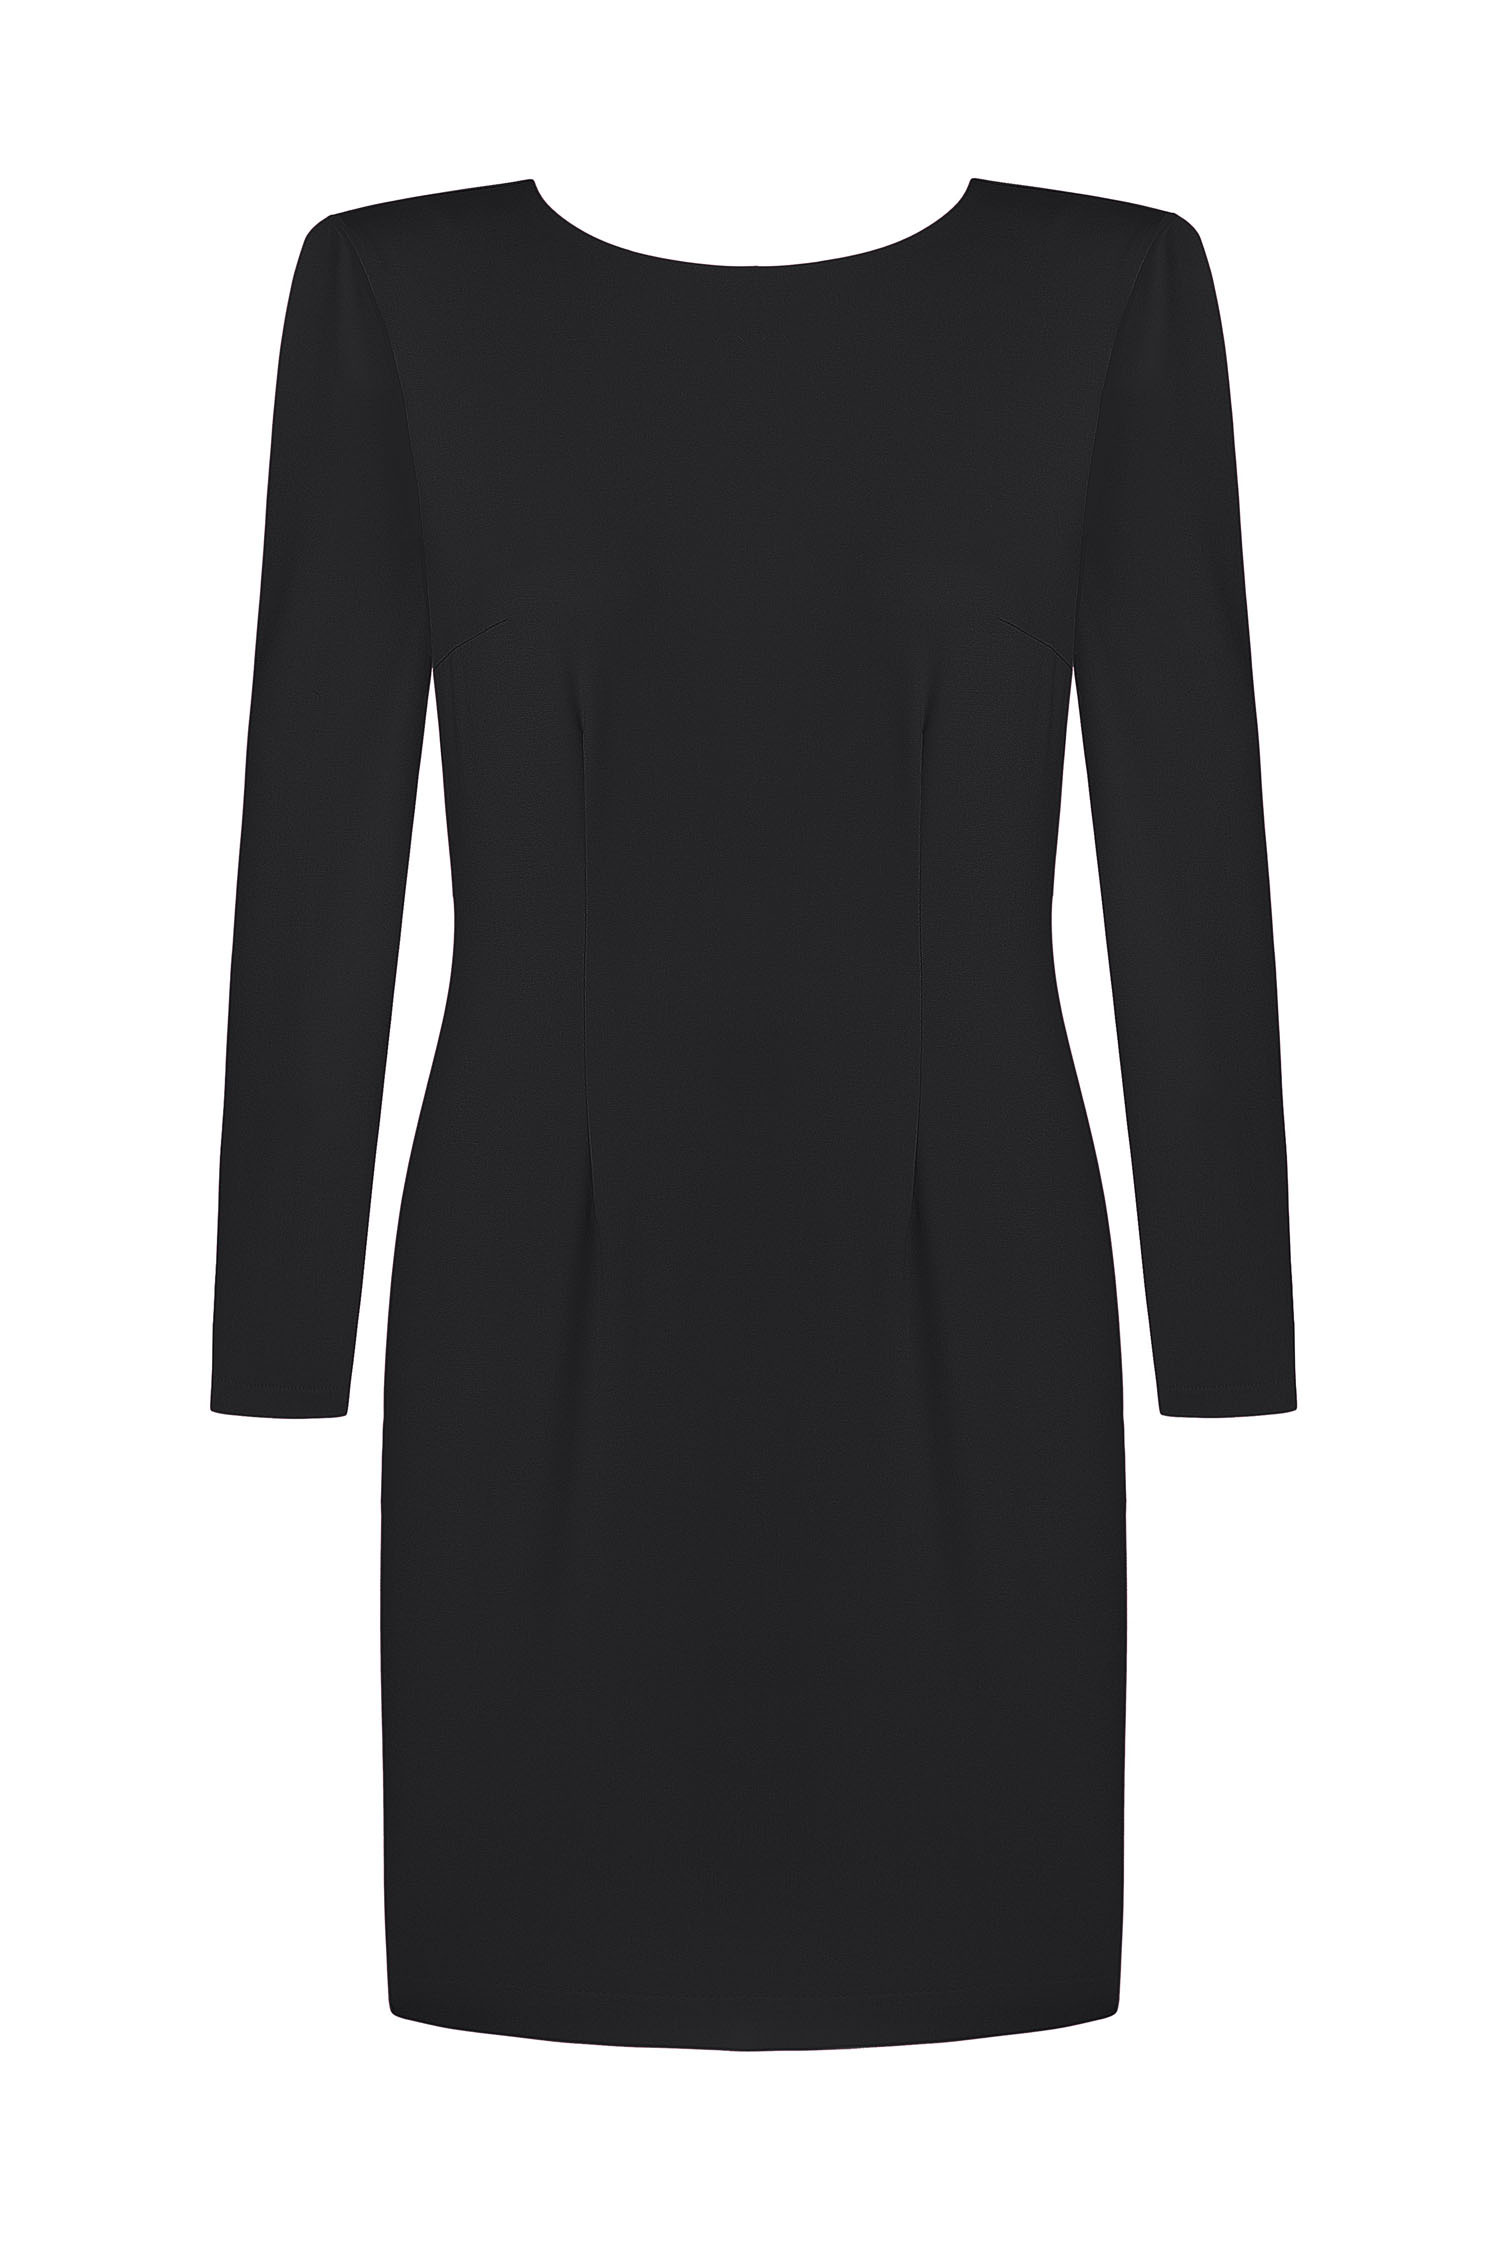 Сукня міні з вирізом по спині чорна - THE LACE photo 134917